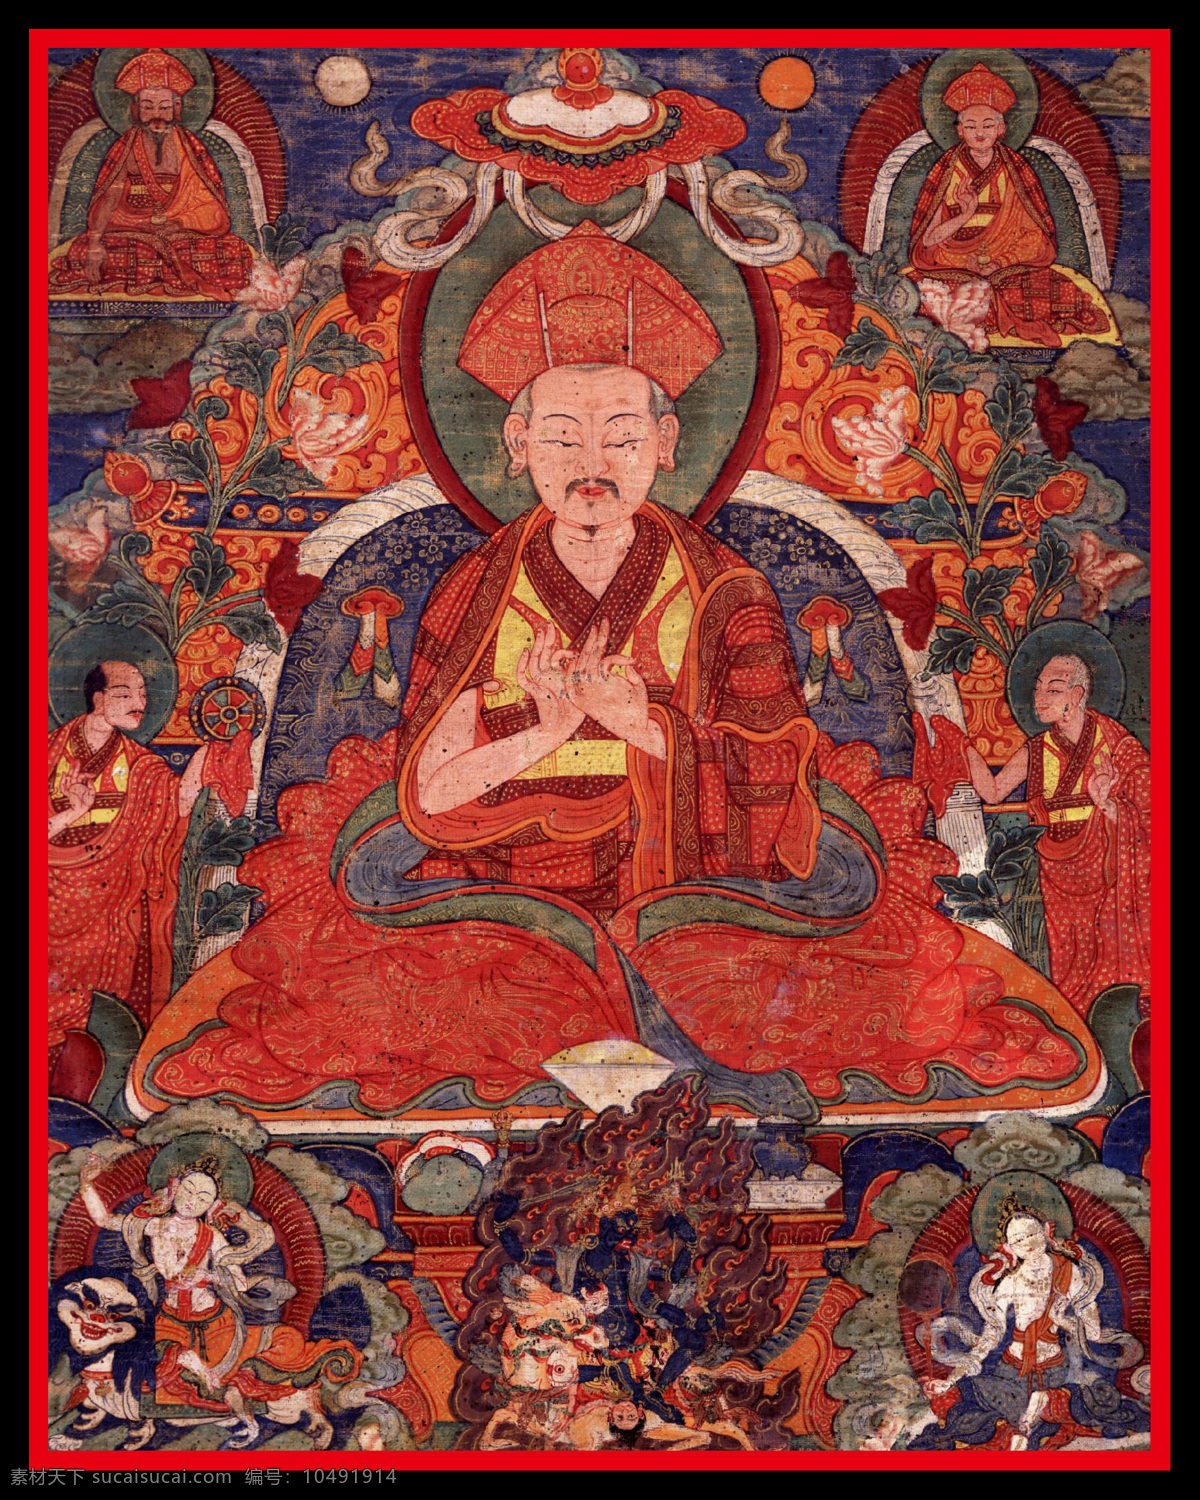 老唐卡 唐卡 传承 西藏 藏传 佛教 密宗 法器 佛 菩萨 成就 成就者 大德 喇嘛 活佛 宗教信仰 文化艺术